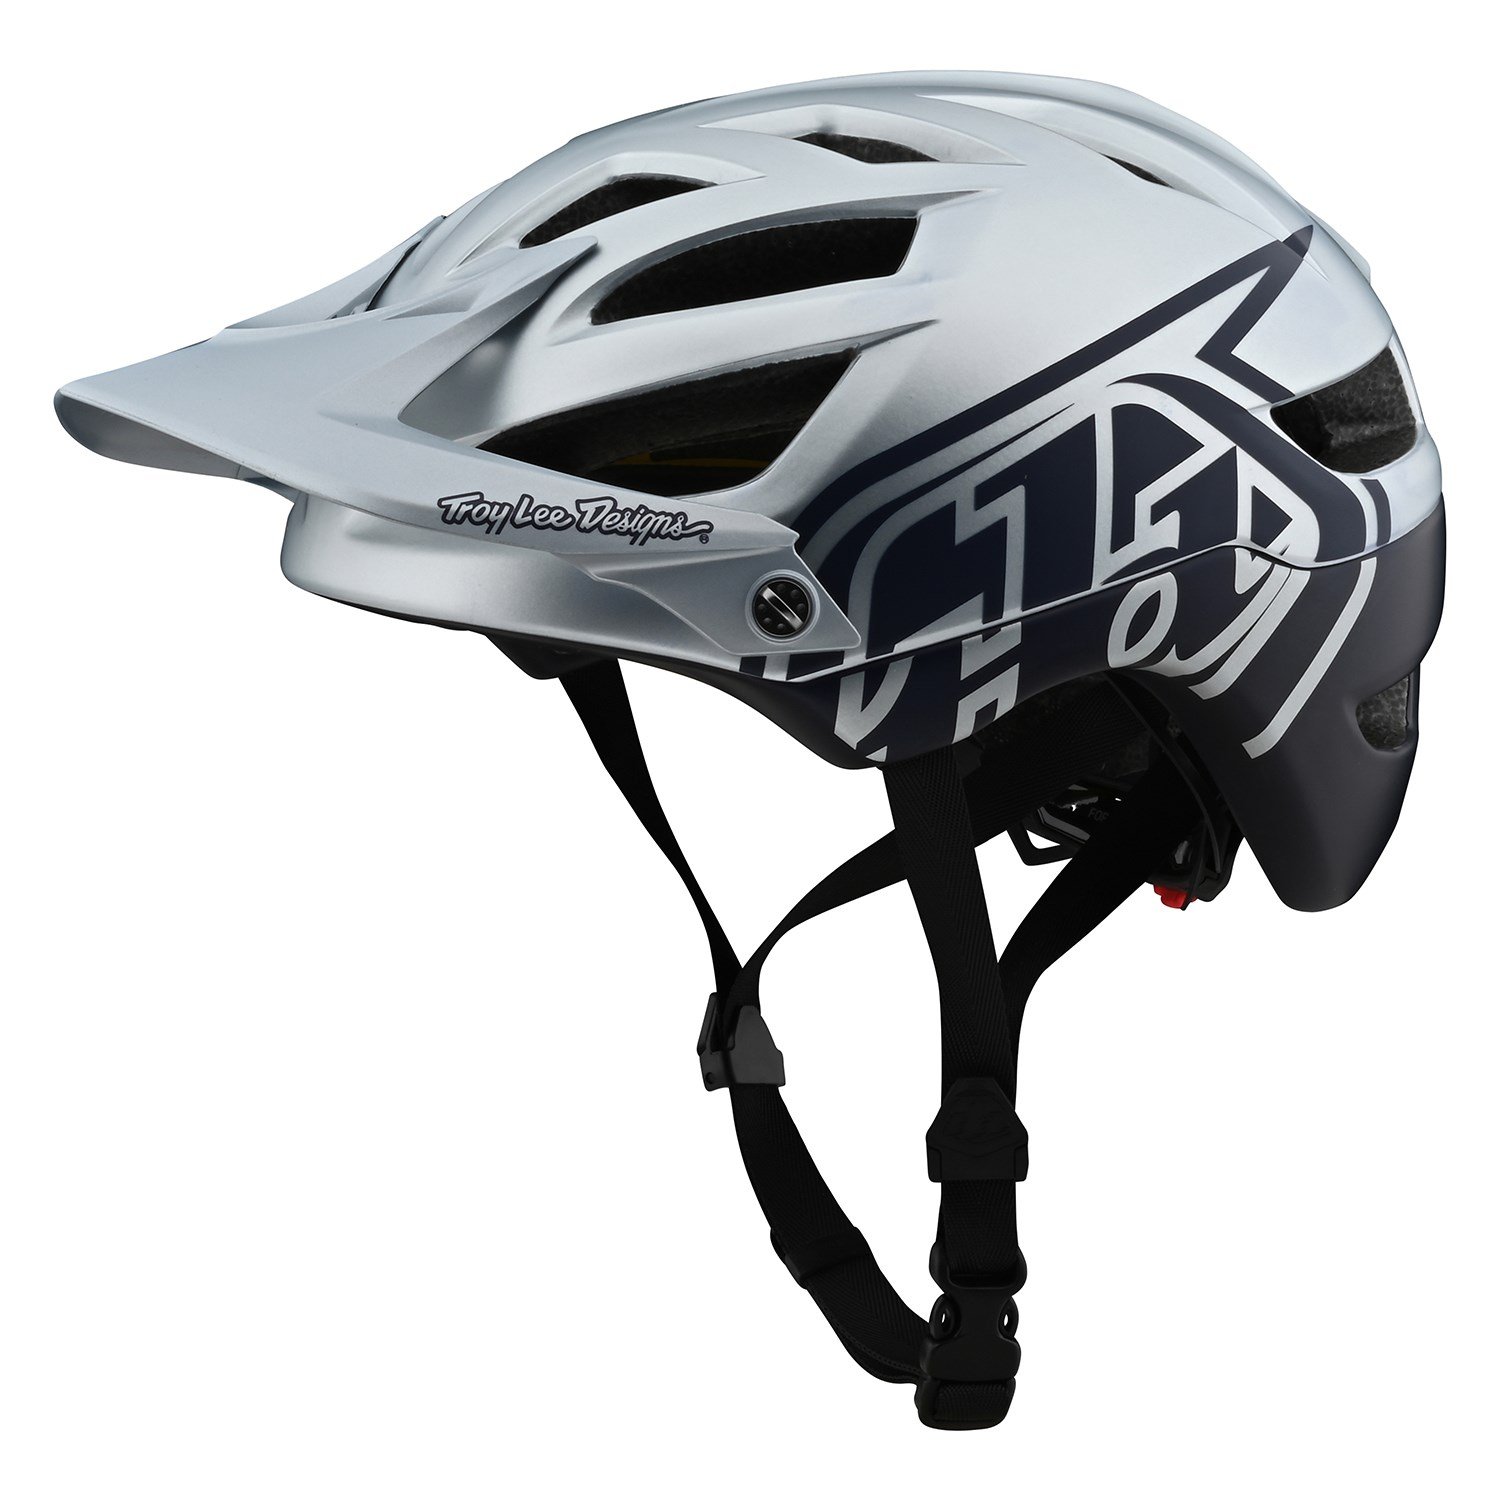 troy lee designs bike helmet